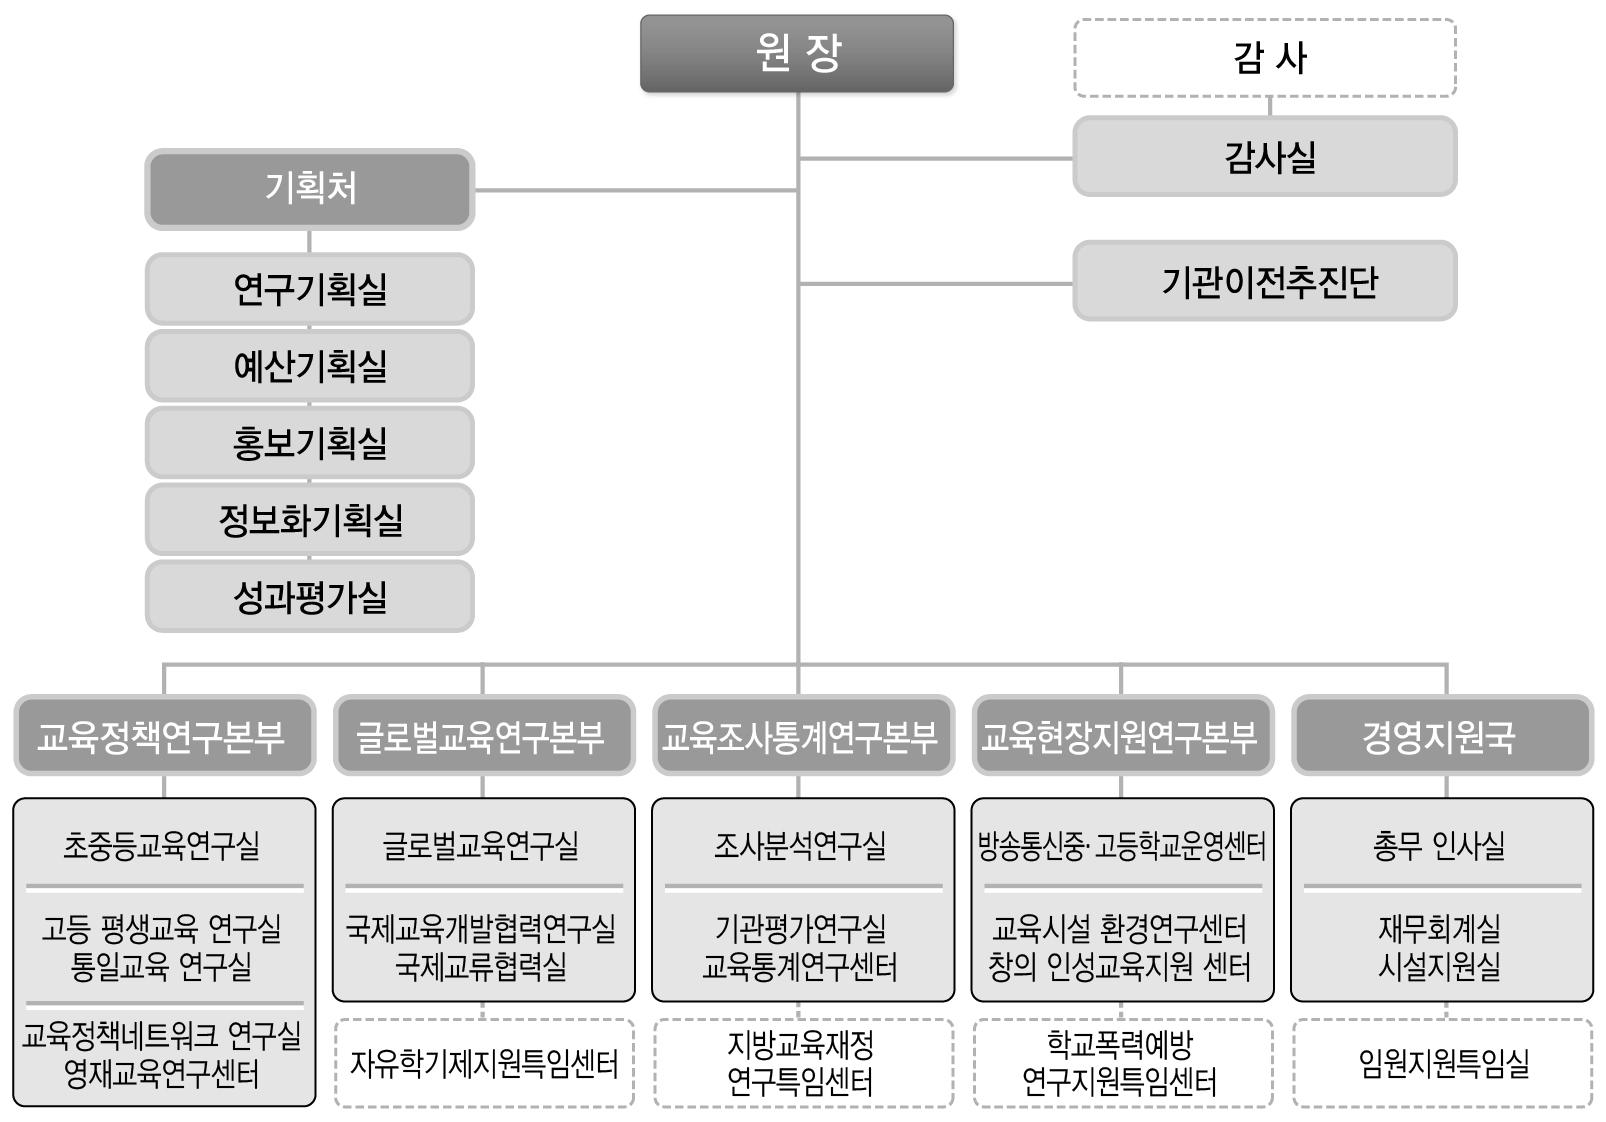 한국교육개발원(KEDI) 조직도